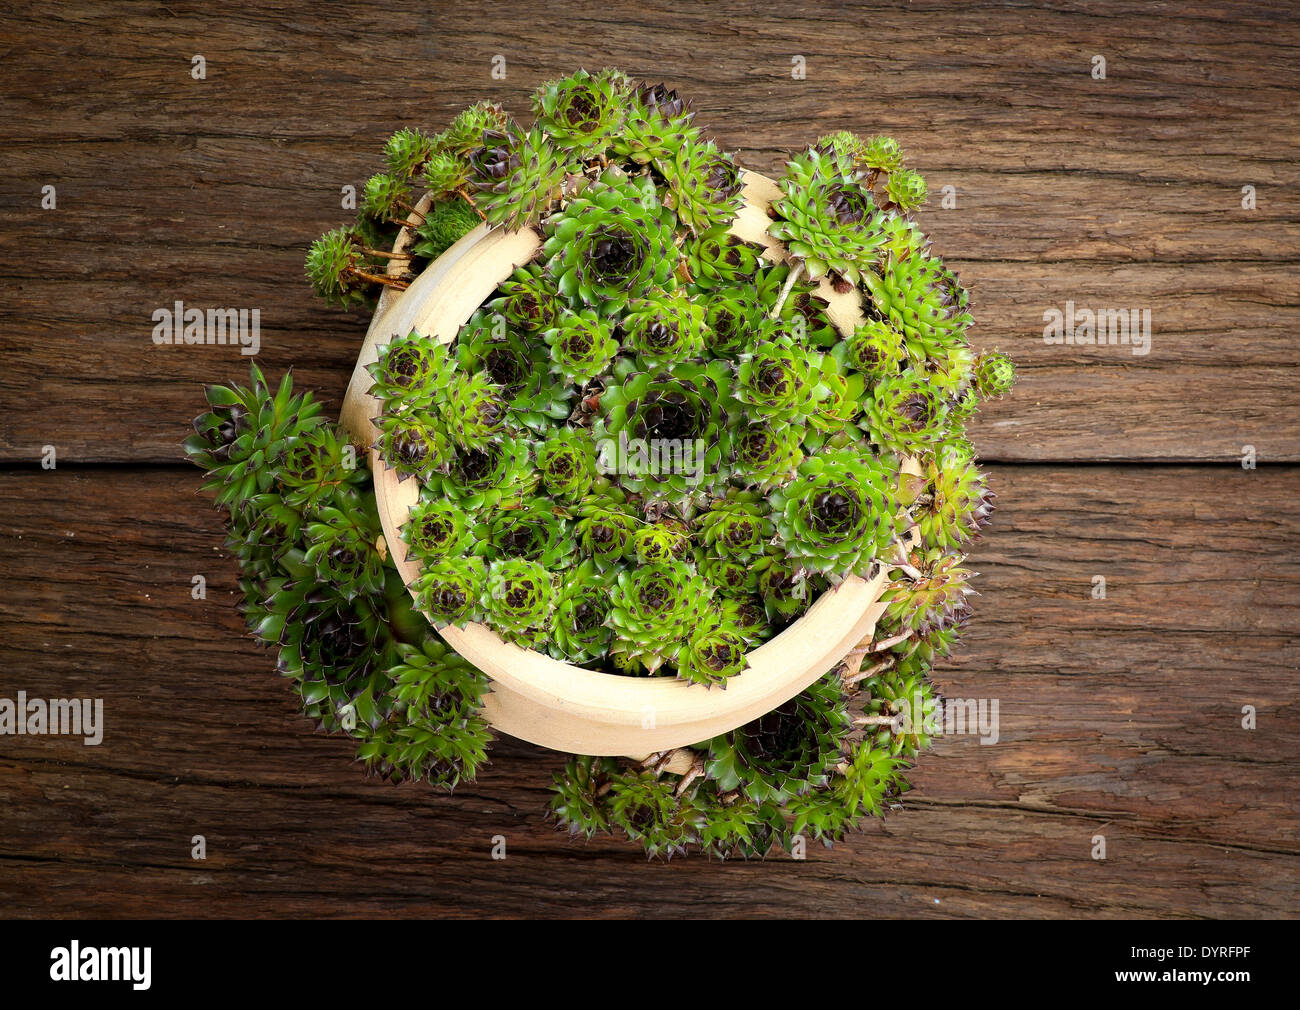 Saftige Sempervivum Calcareum in Keramik Blumentopf mit seitlichen  Öffnungen grobe Holz Hintergrund Stockfotografie - Alamy